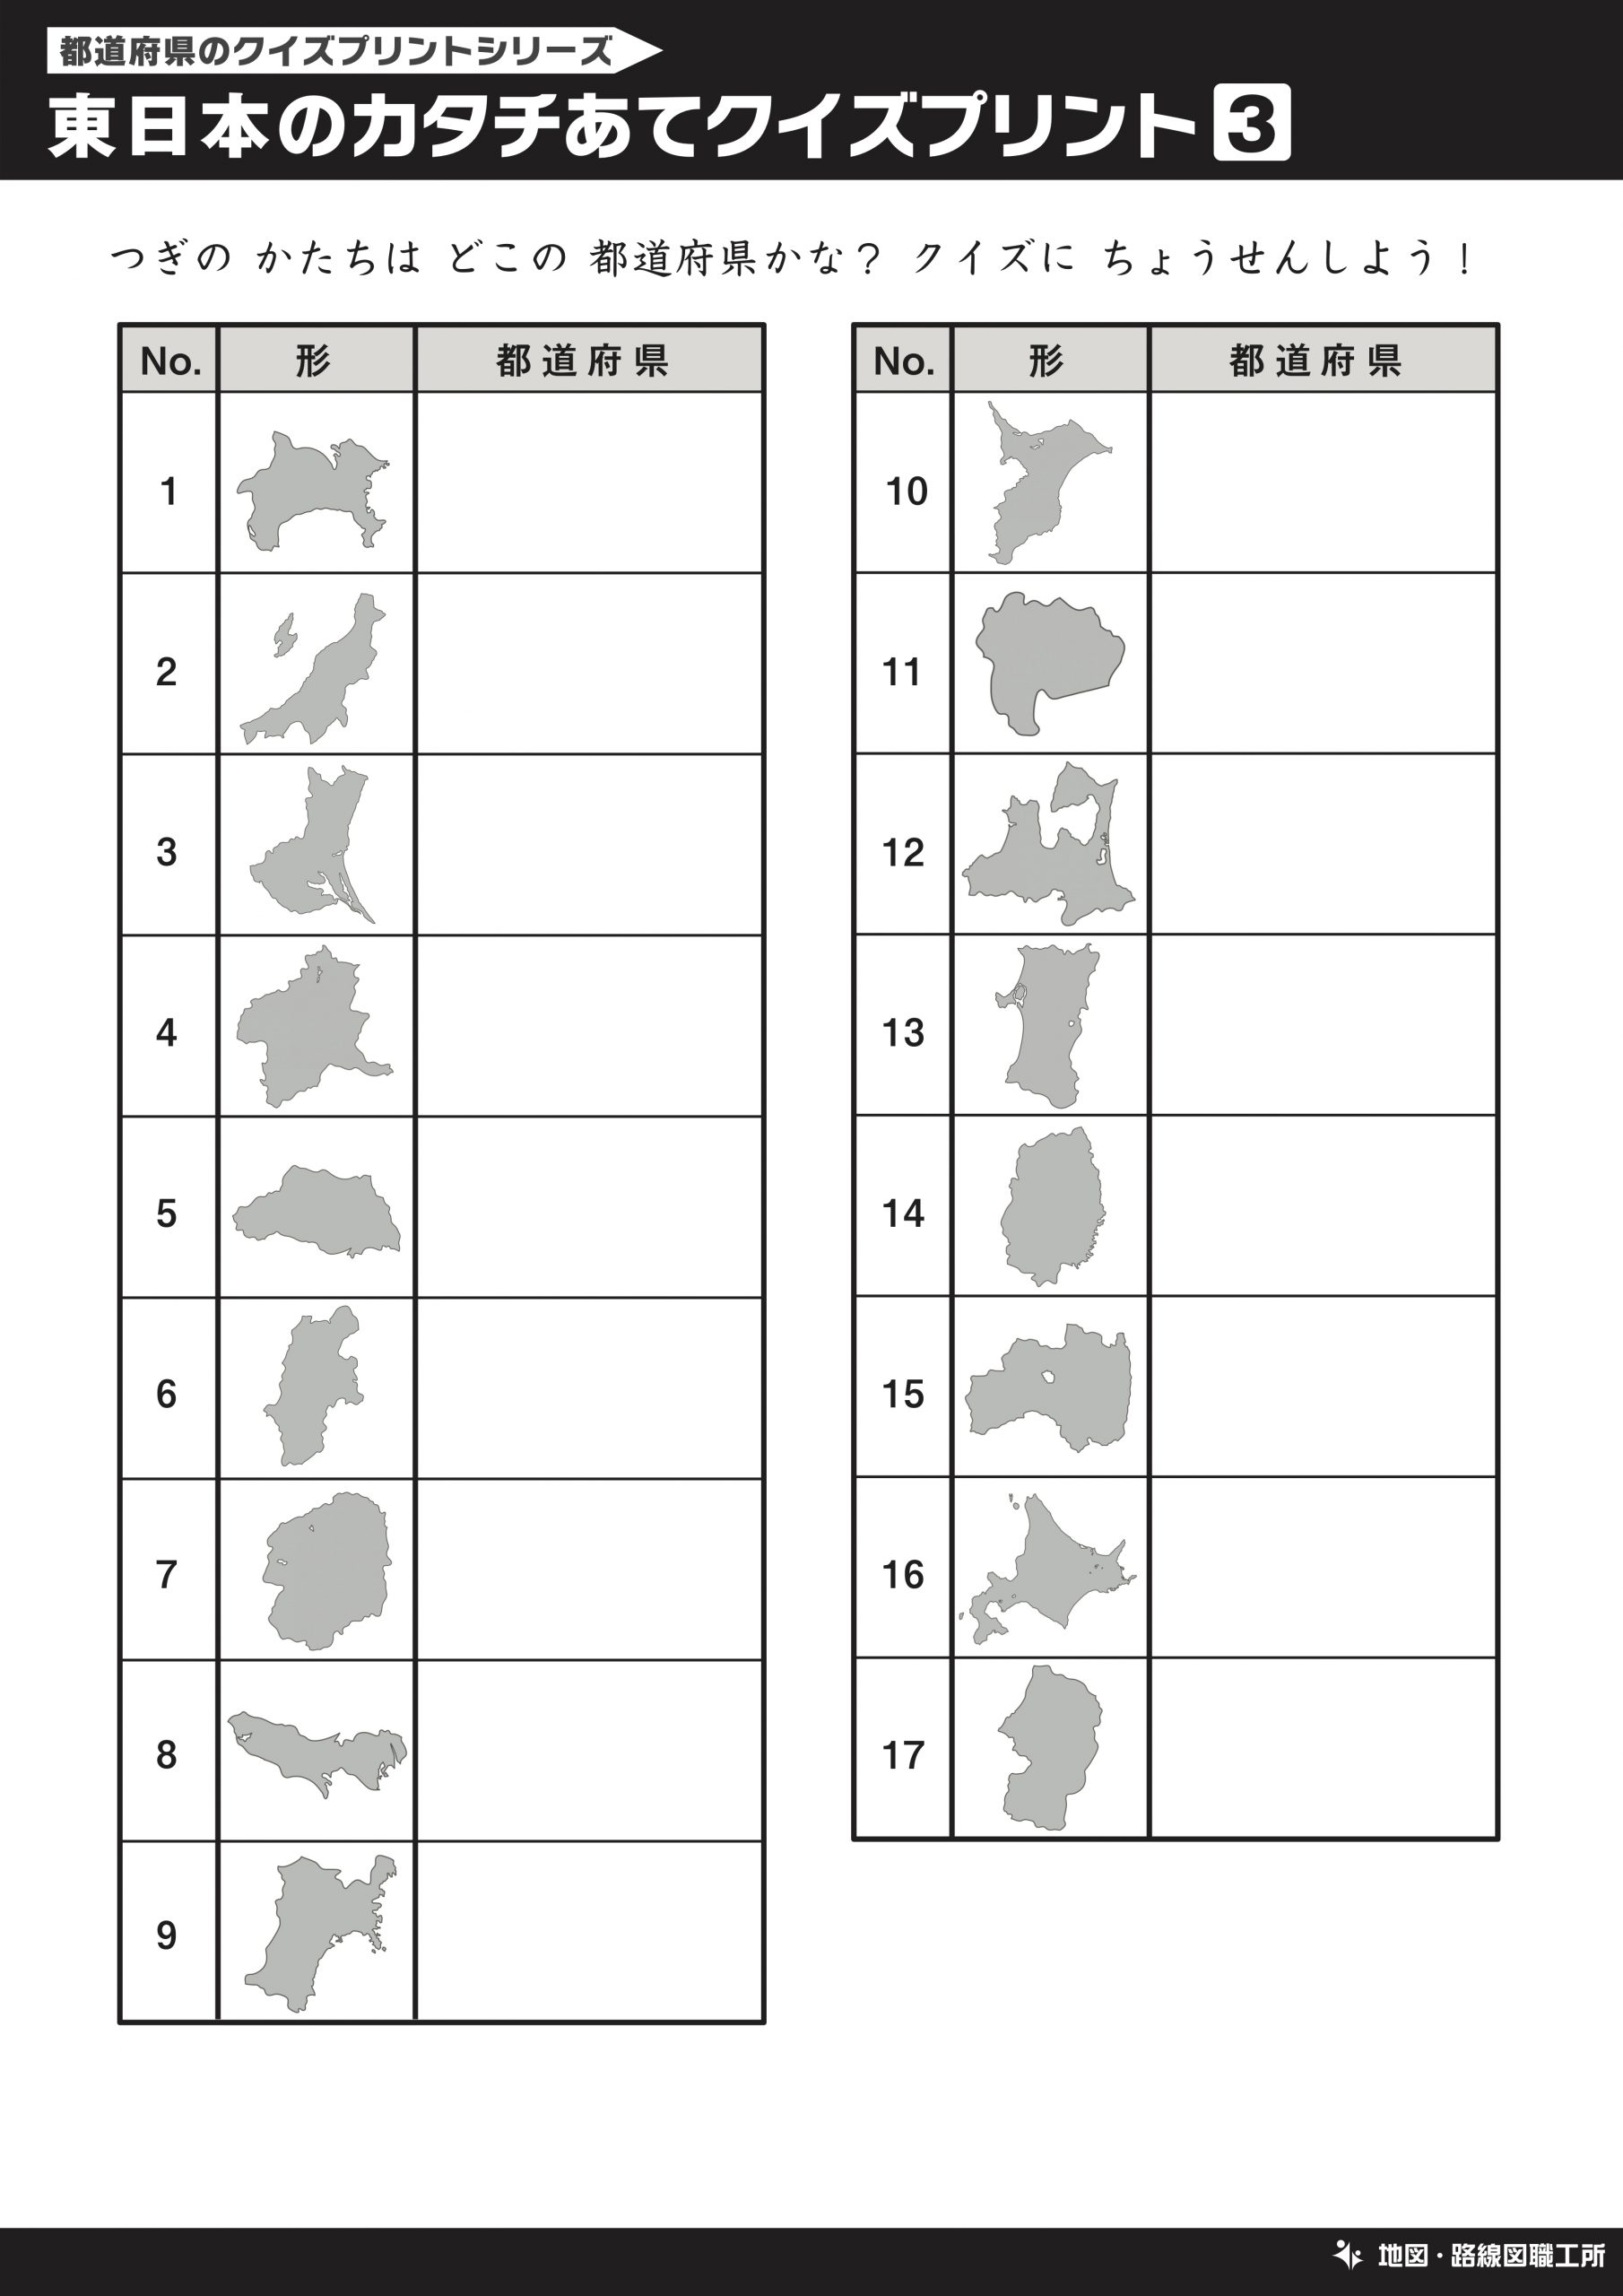 日本地図の学習用クイズプリント 30種類以上